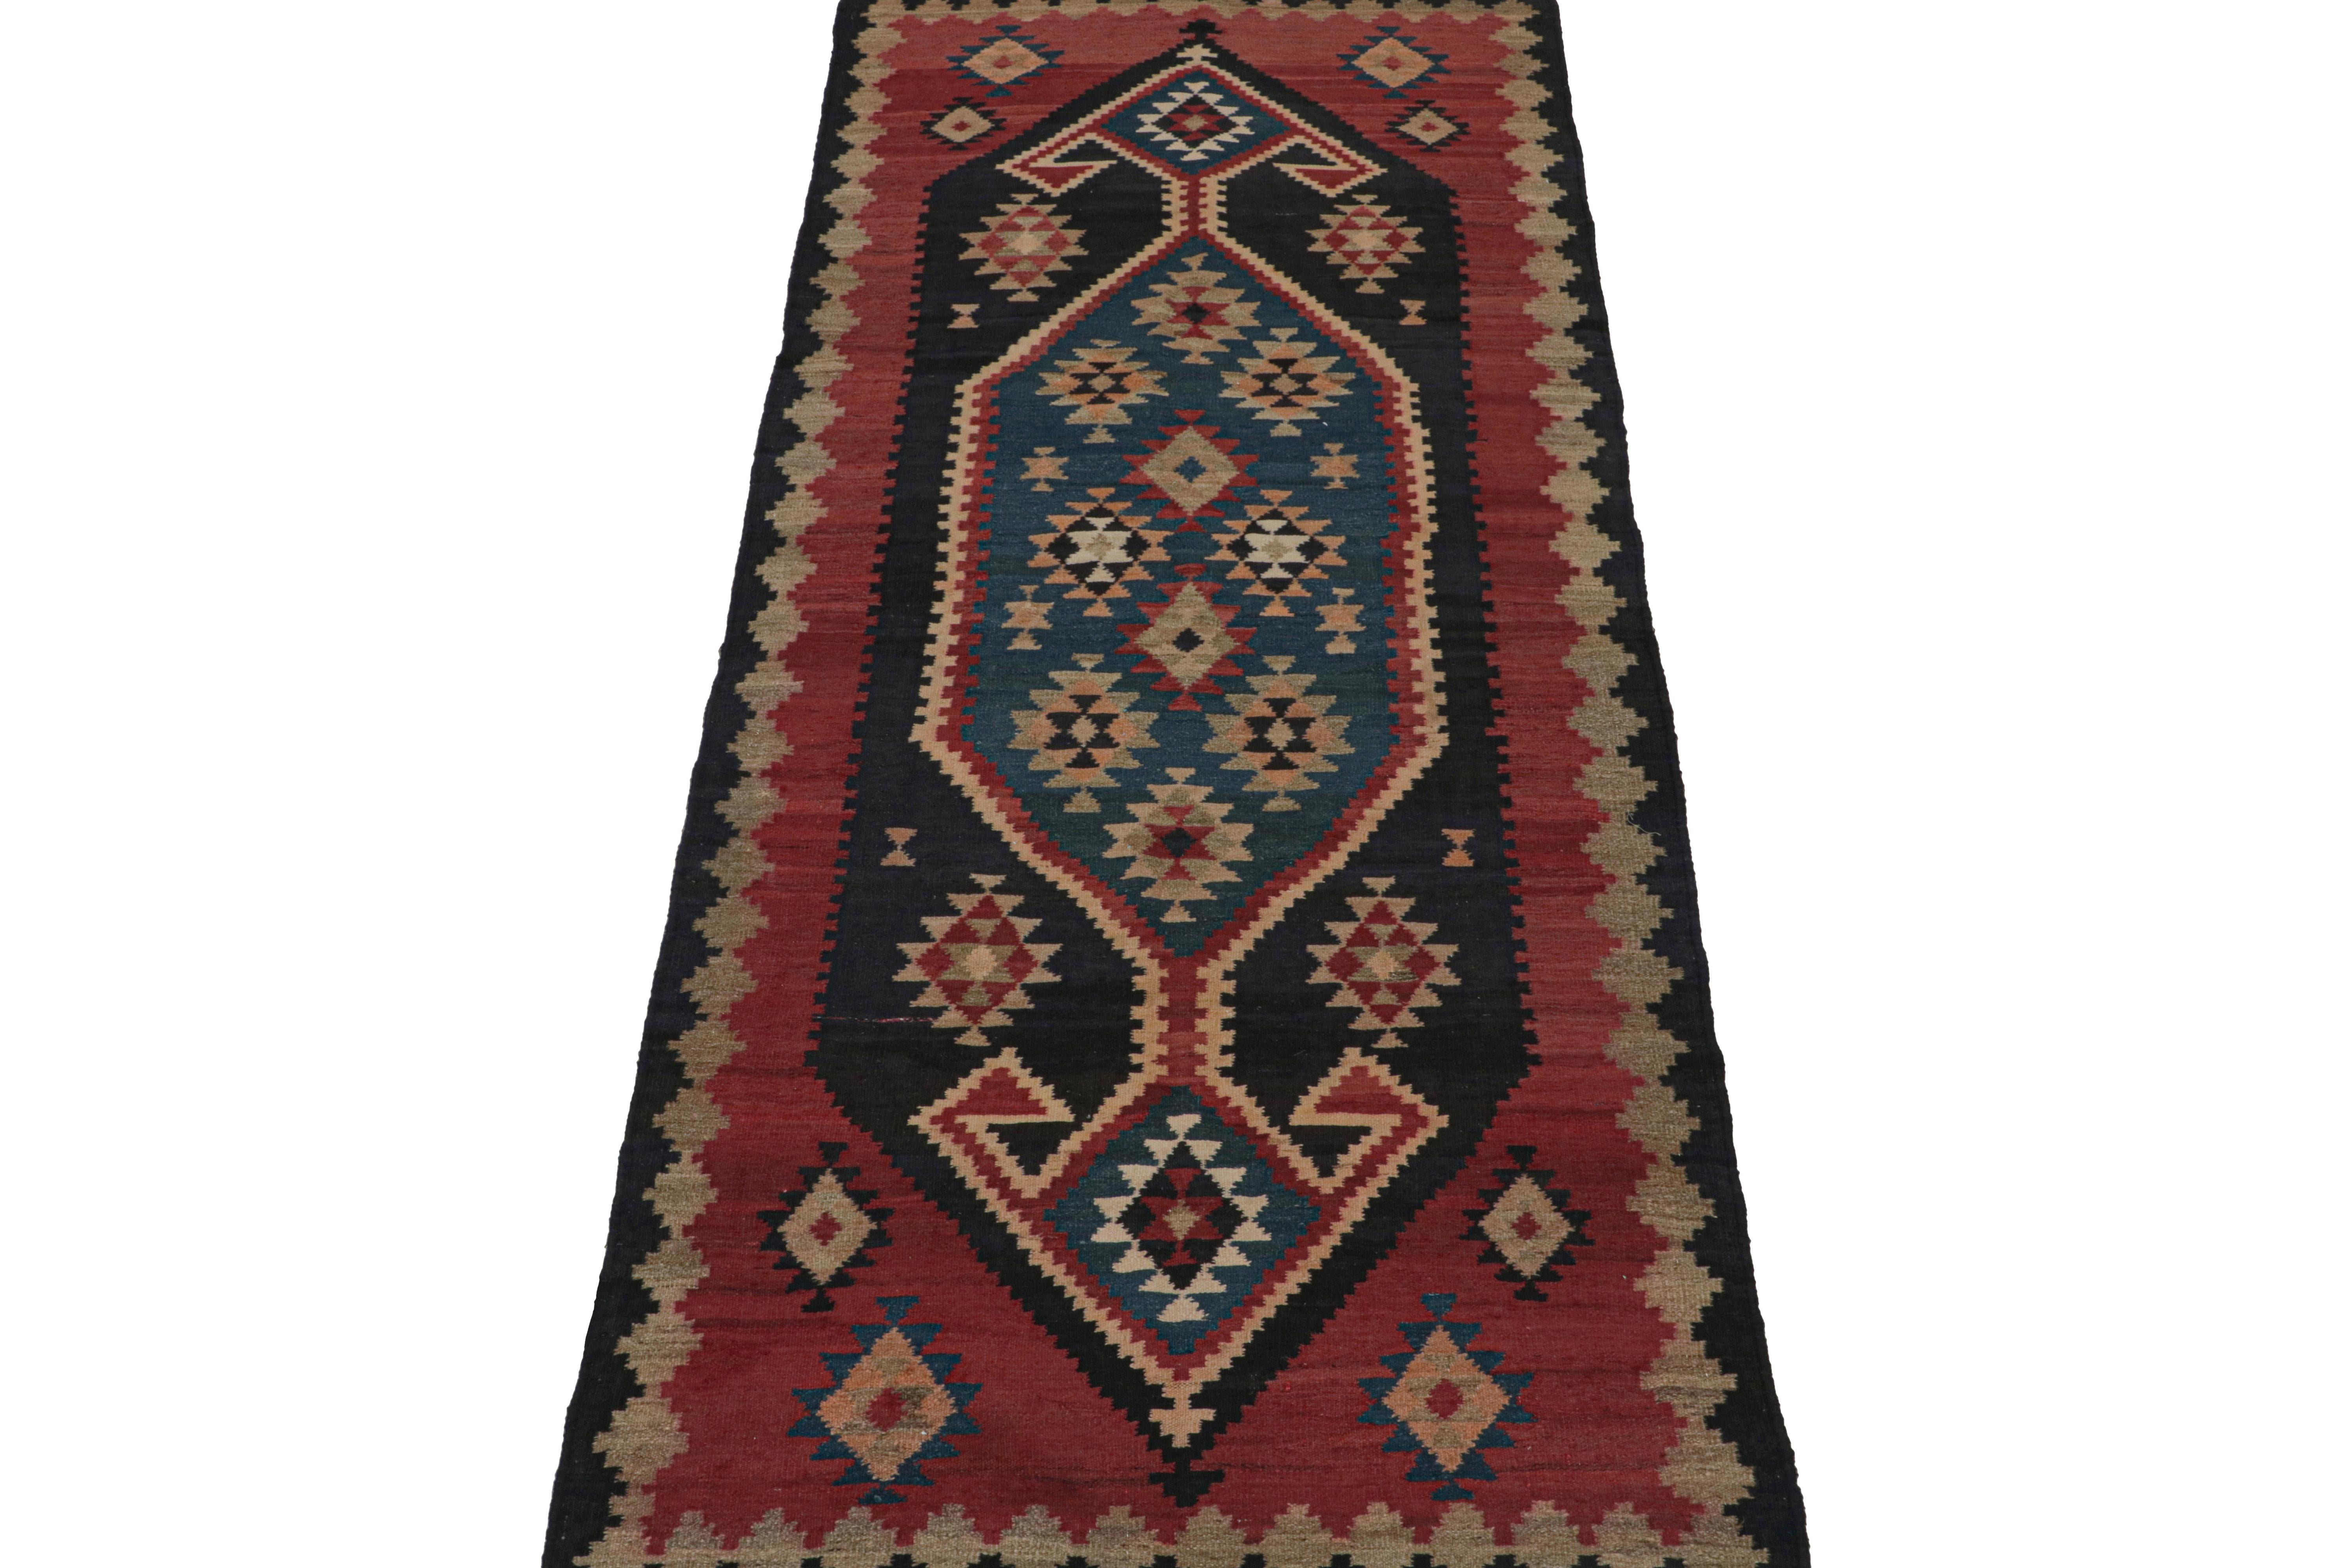 Ce Vintage 4x10 Persian Kilim est supposé être un tapis tribal Ghazvin de la ville et de la province titrée en Iran (aujourd'hui orthographiée Qazvin). Tissé à la main en laine, il date des années 1950-1960. 

Son design présente des motifs